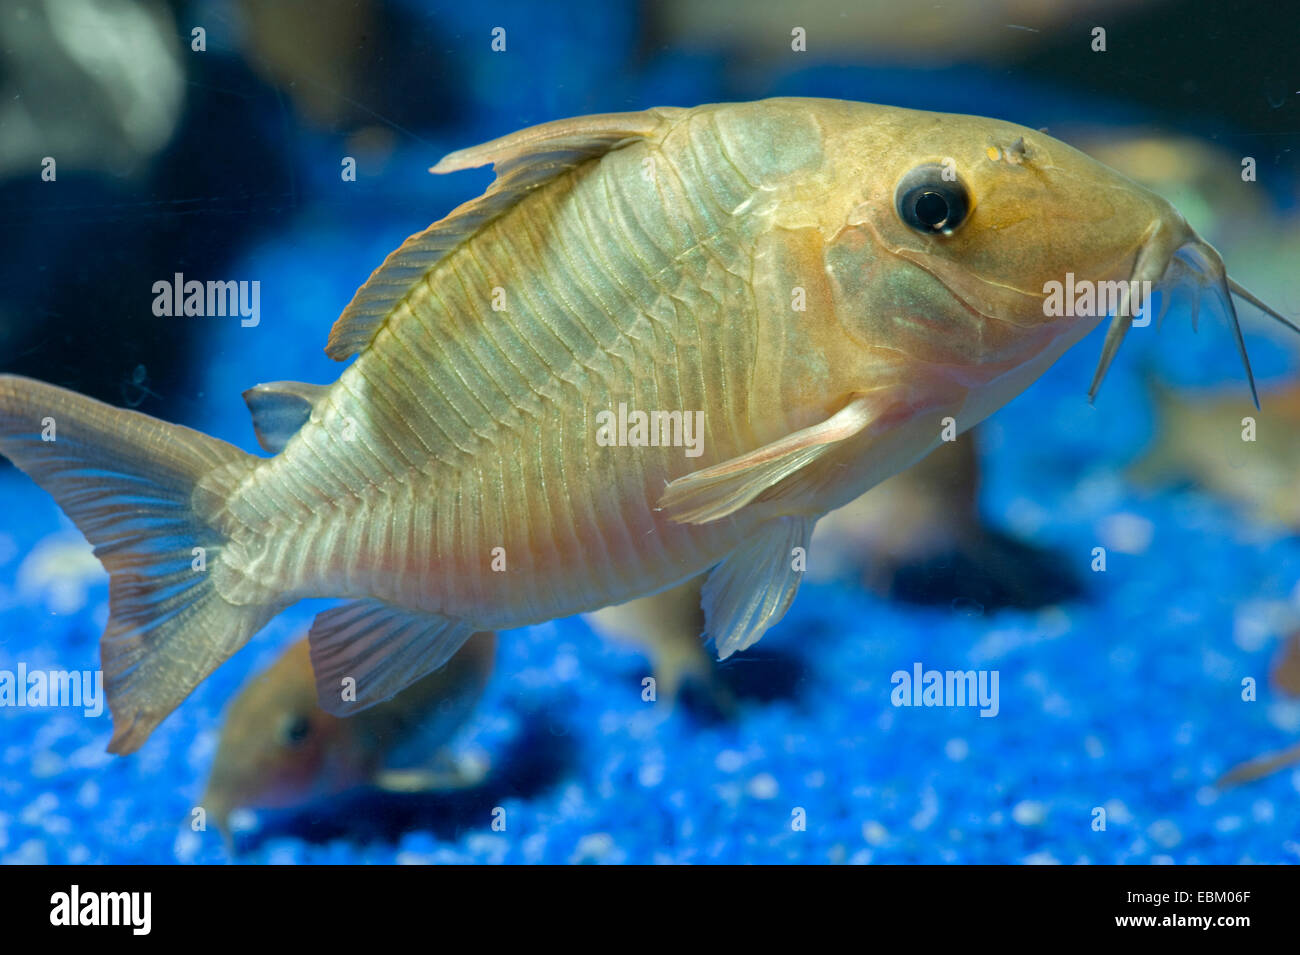 Hognosed catfish (Brochis multiradiatus), in aquarium Stock Photo